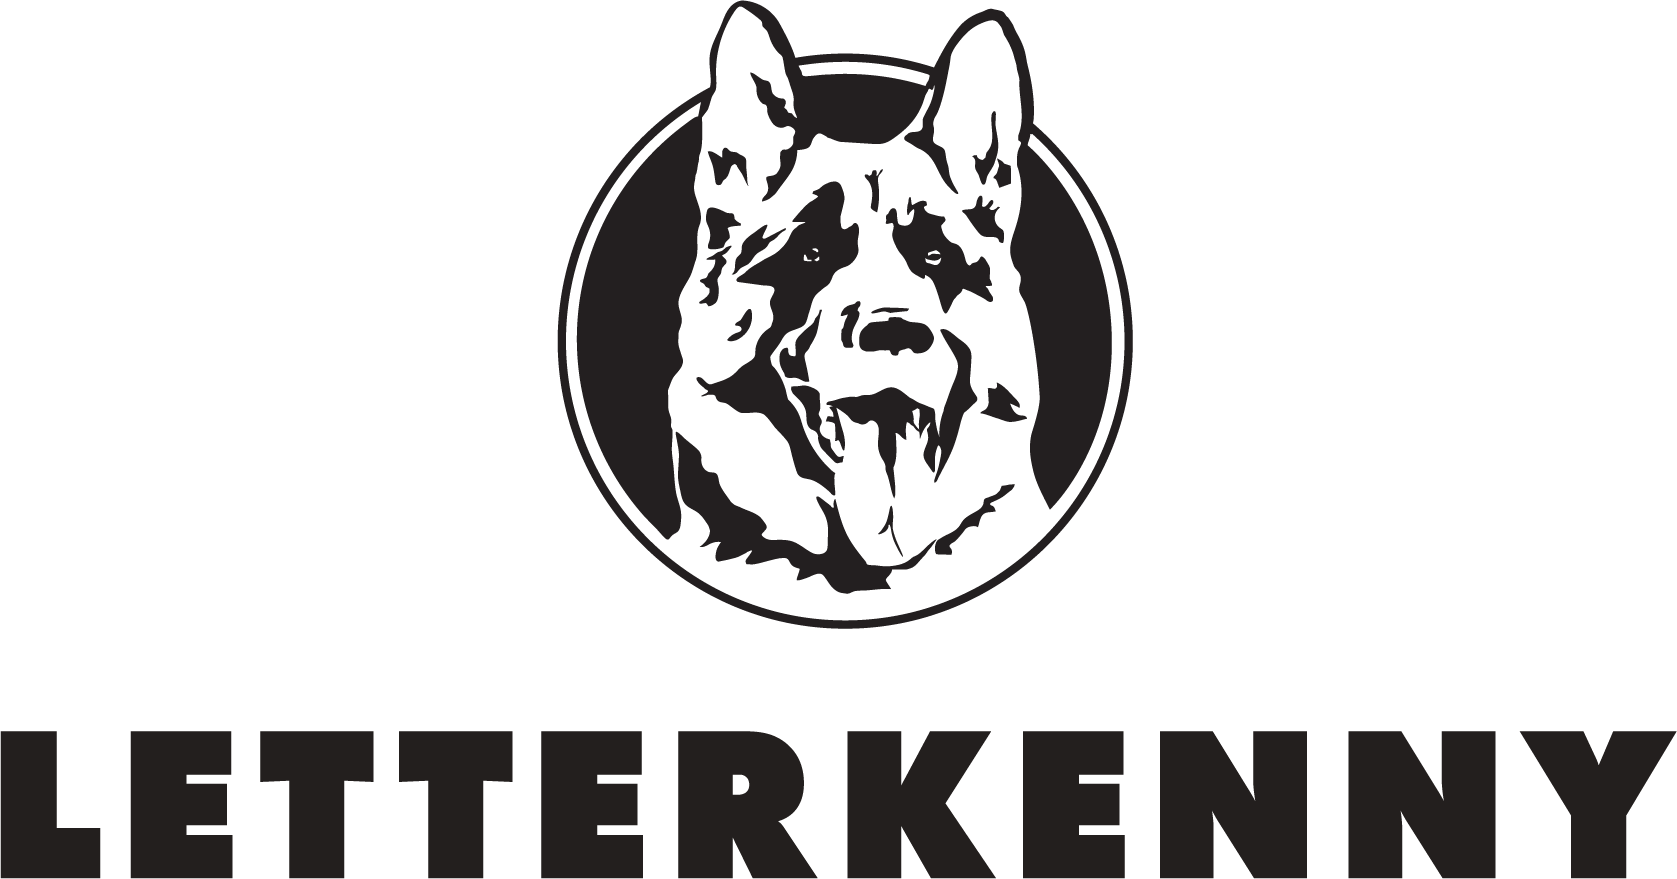 Letterkenny Logo